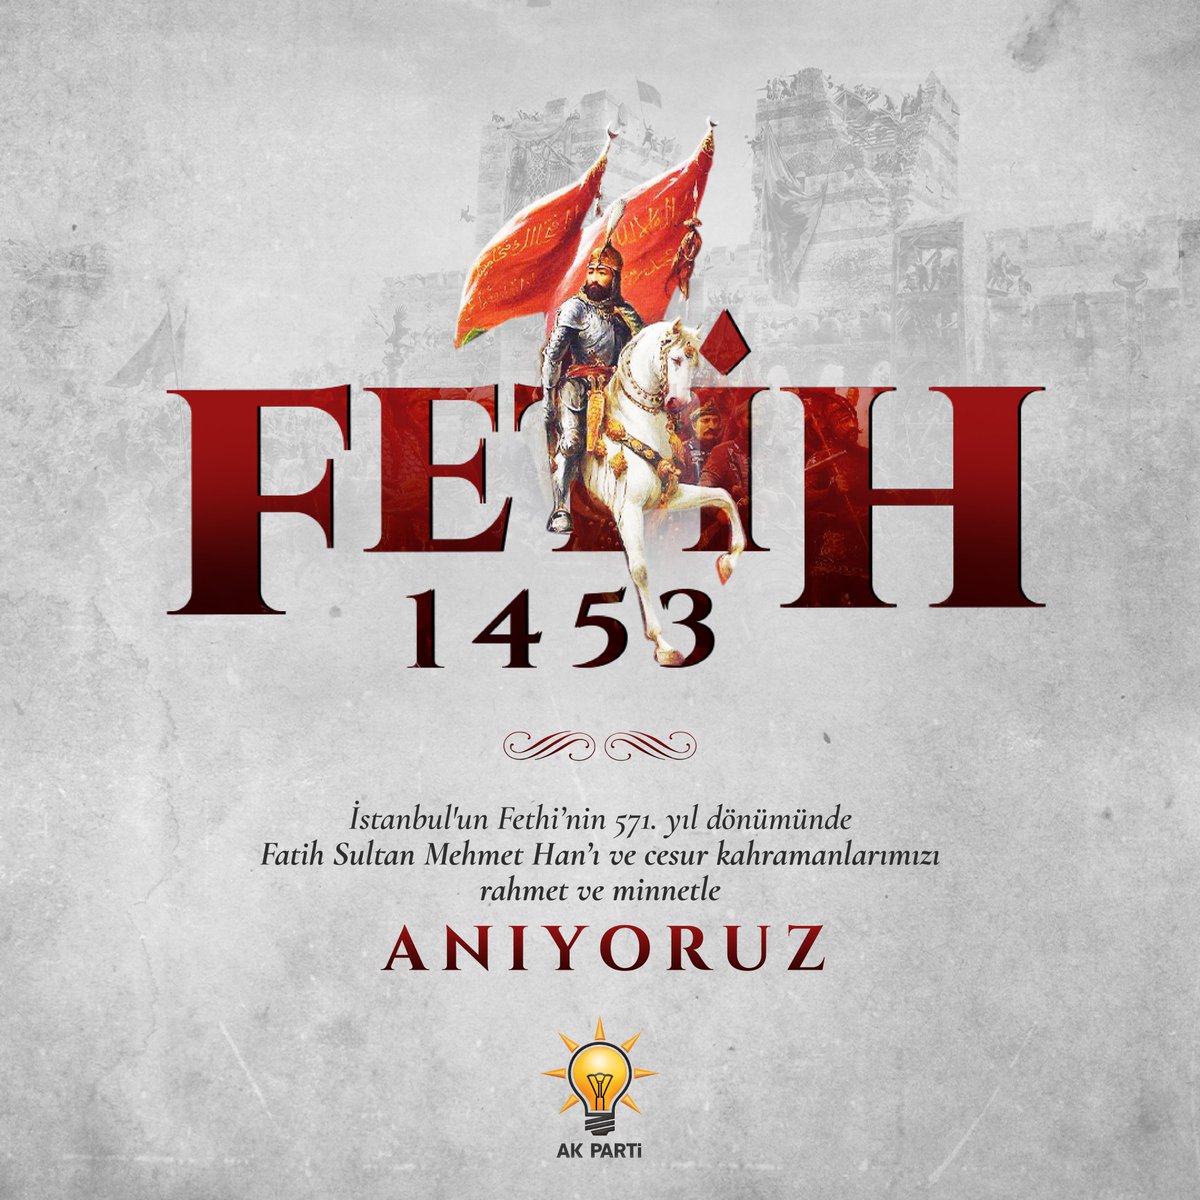 İstanbul'un Fethi’nin 571. yıl dönümünde Fatih Sultan Mehmet Han’ı ve cesur kahramanlarımızı rahmet ve minnetle anıyoruz.